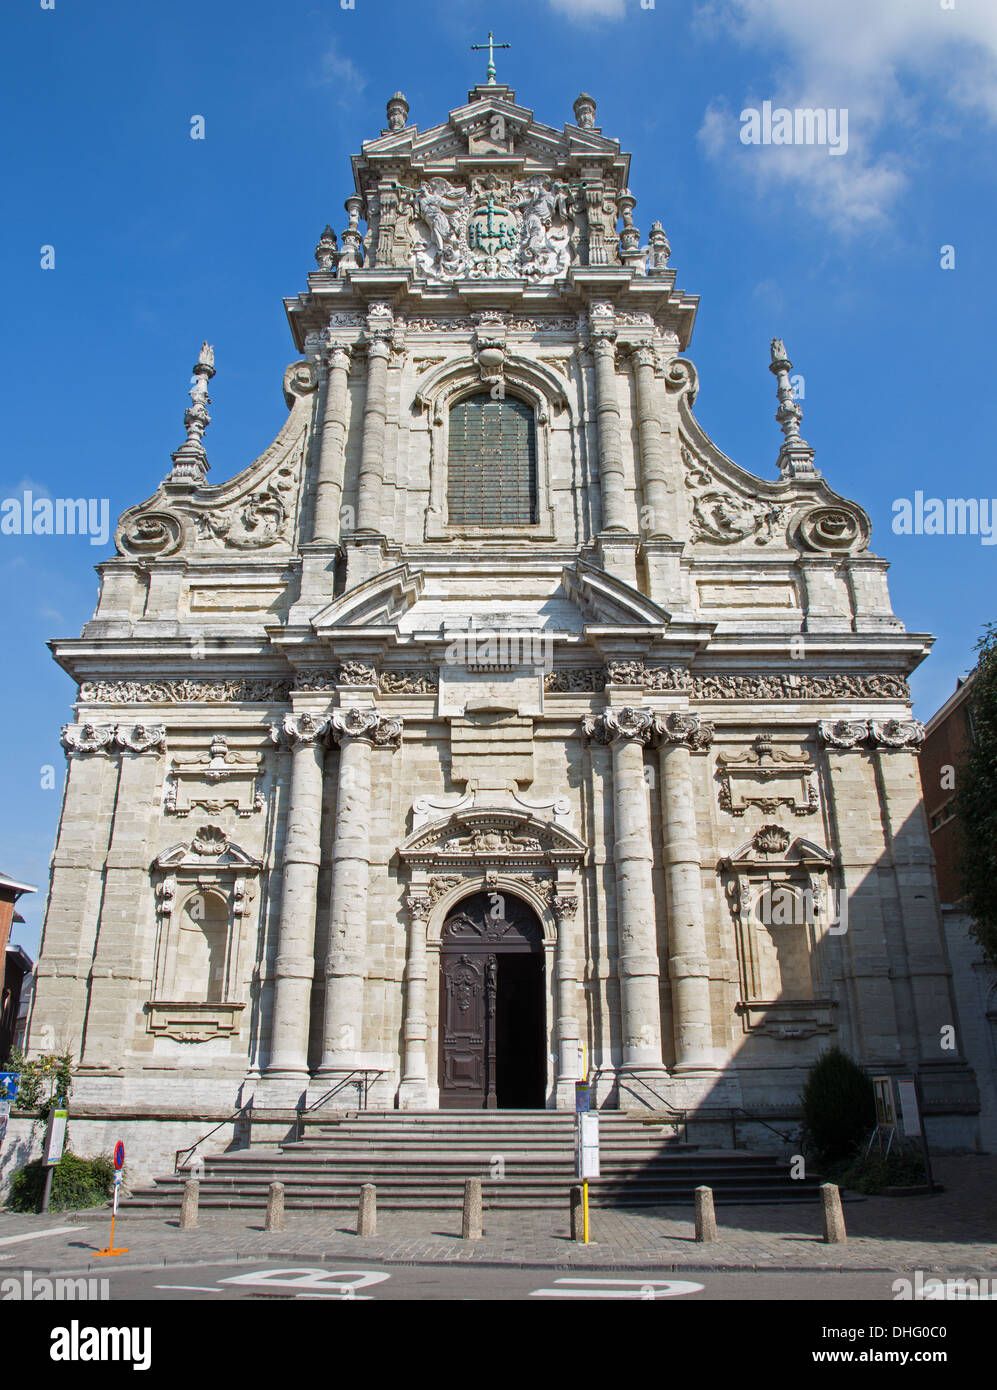 LEUVEN, BELGIQUE - 3 SEPTEMBRE : façade baroque de Saint Michaels church (Michelskerk) en septembre 3, 2013 à Leuven, Belgique. Banque D'Images